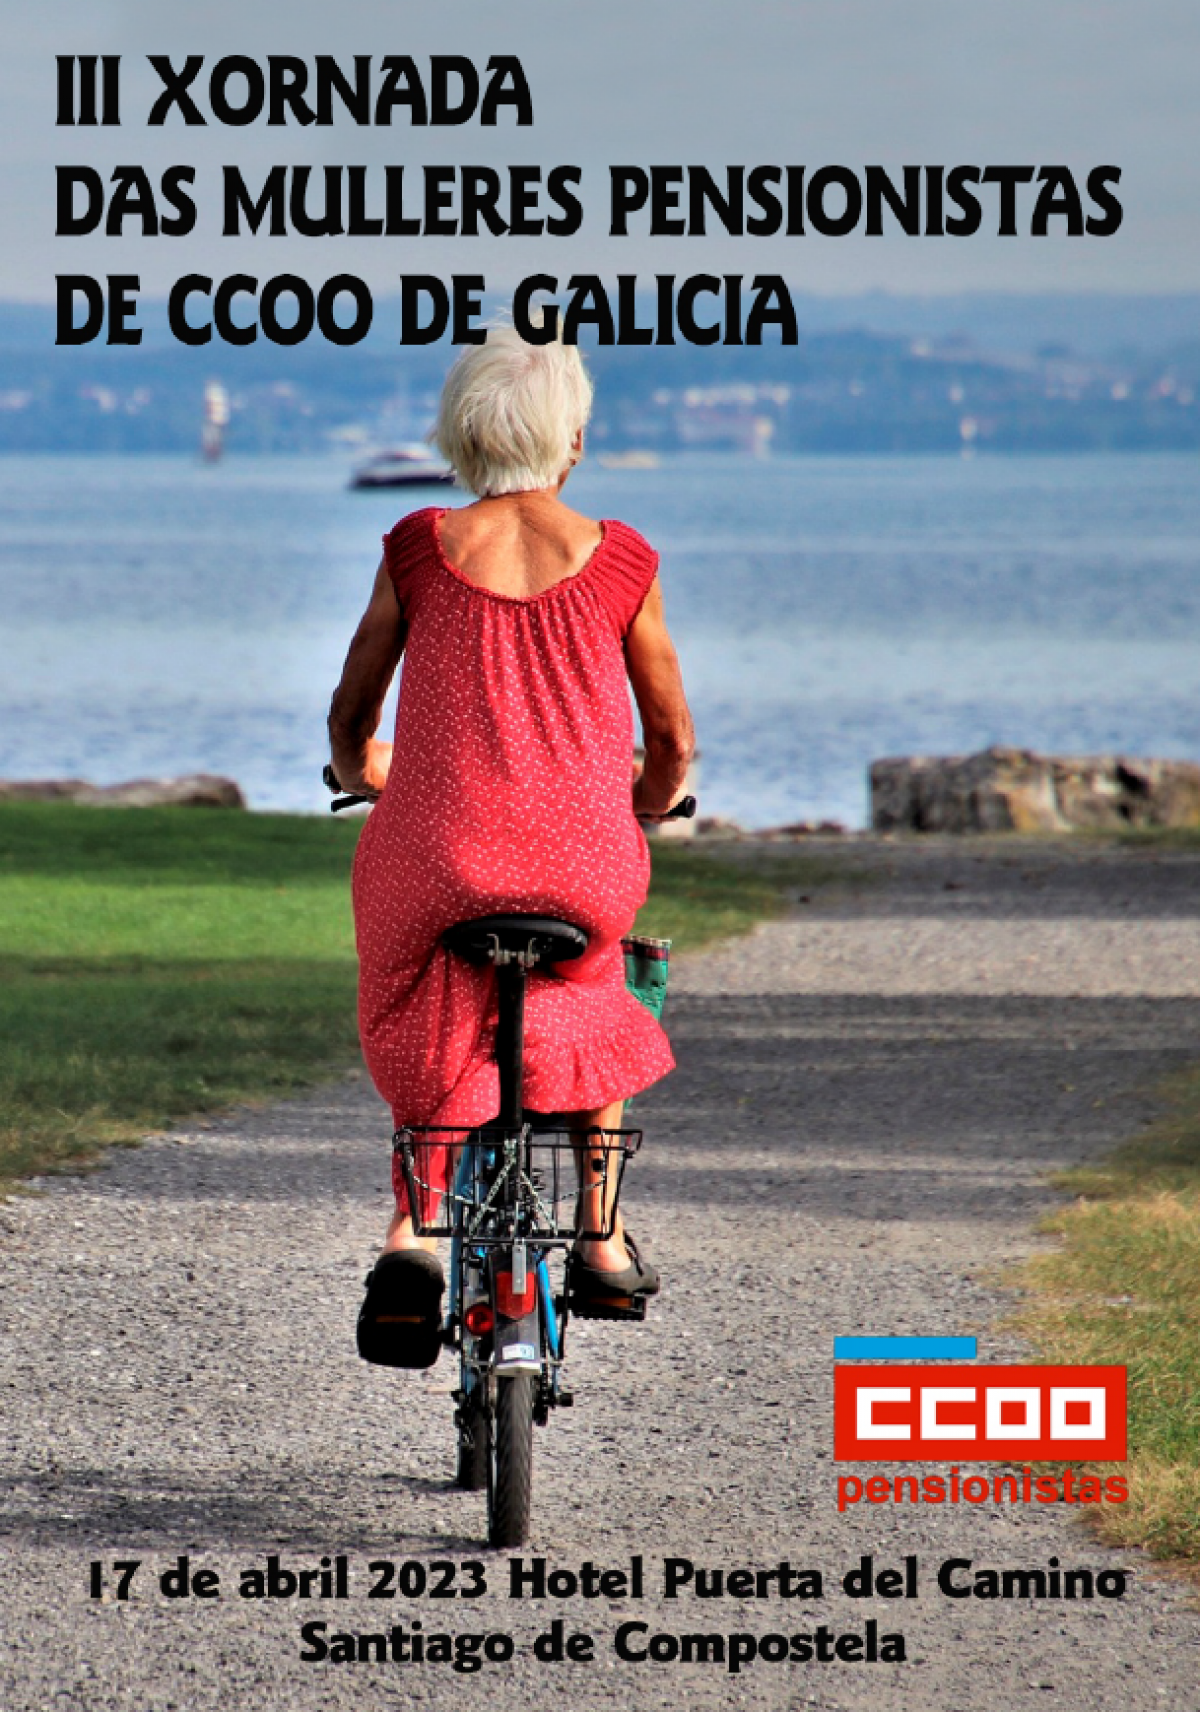 III Xornada das Mulleres Pensionistas de CCOO de Galicia